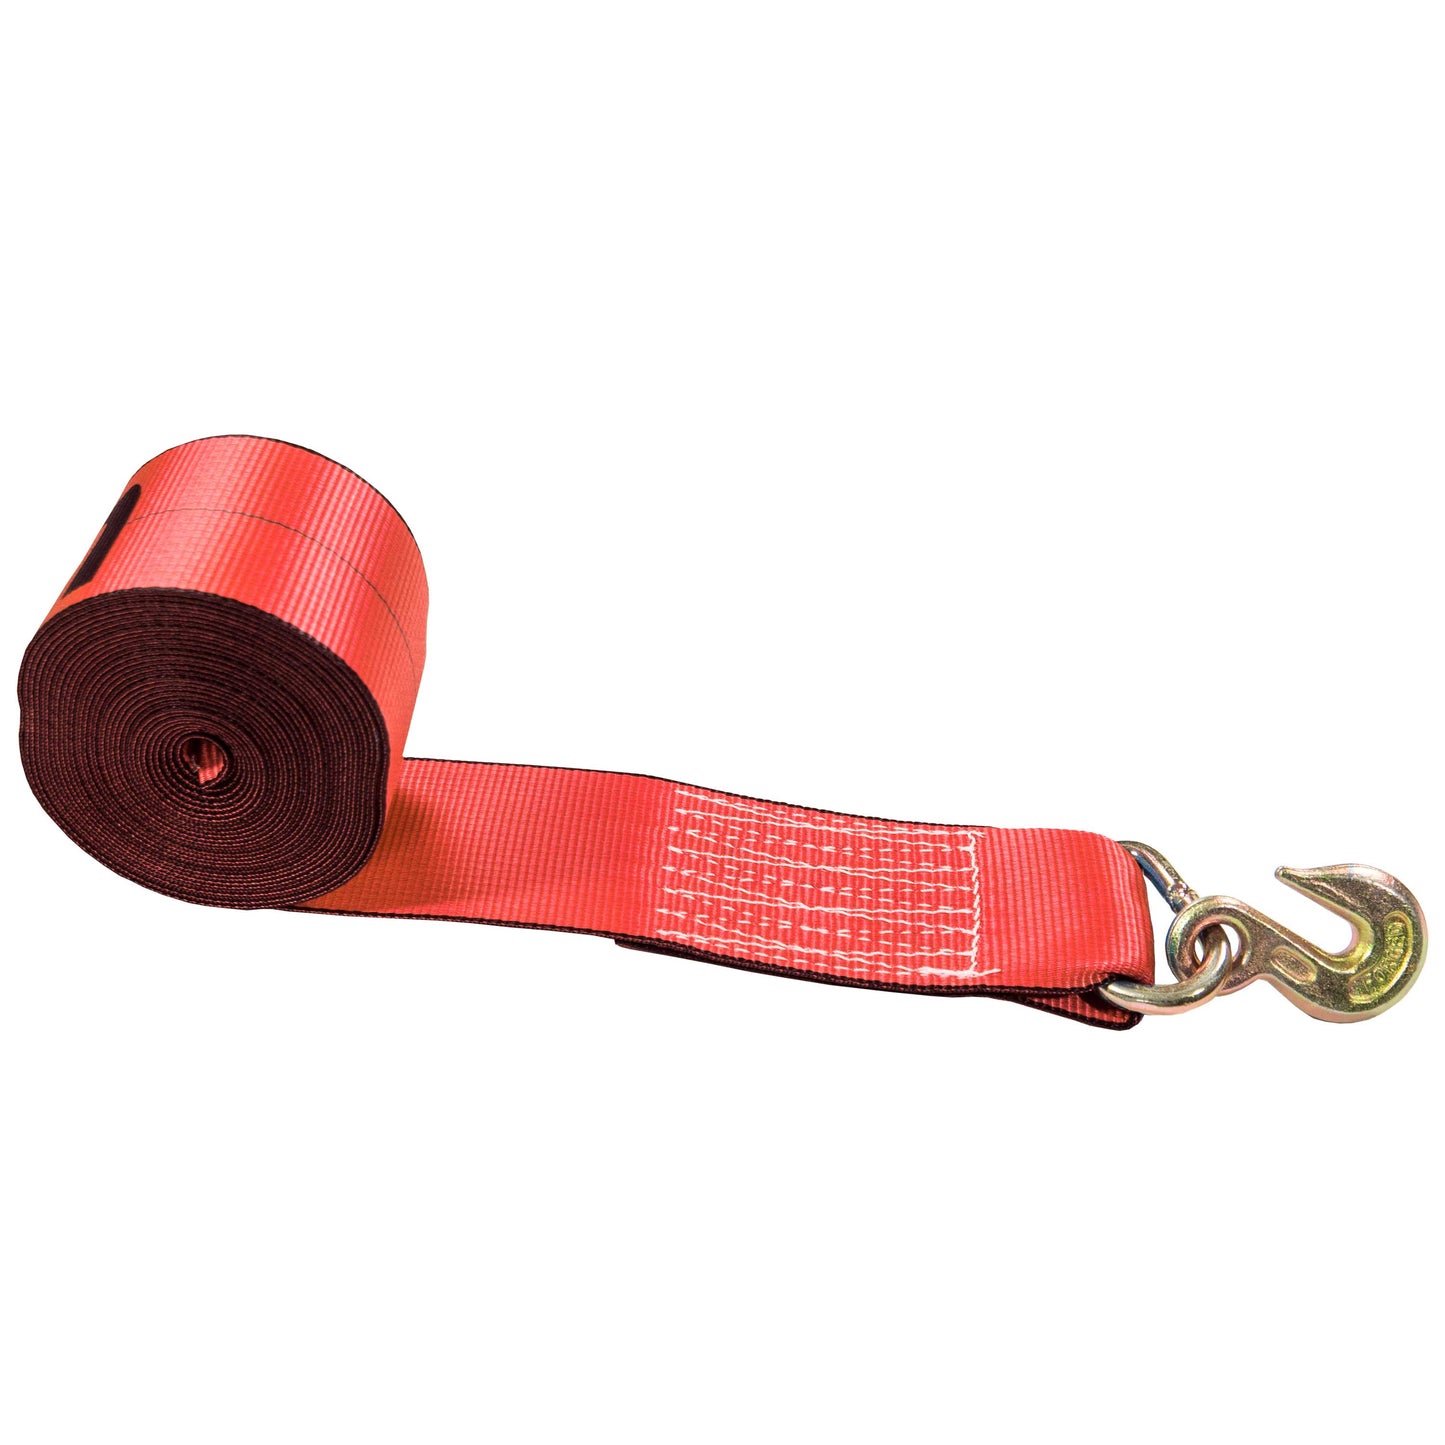 27' 4" heavy-duty red grab hook winch strap